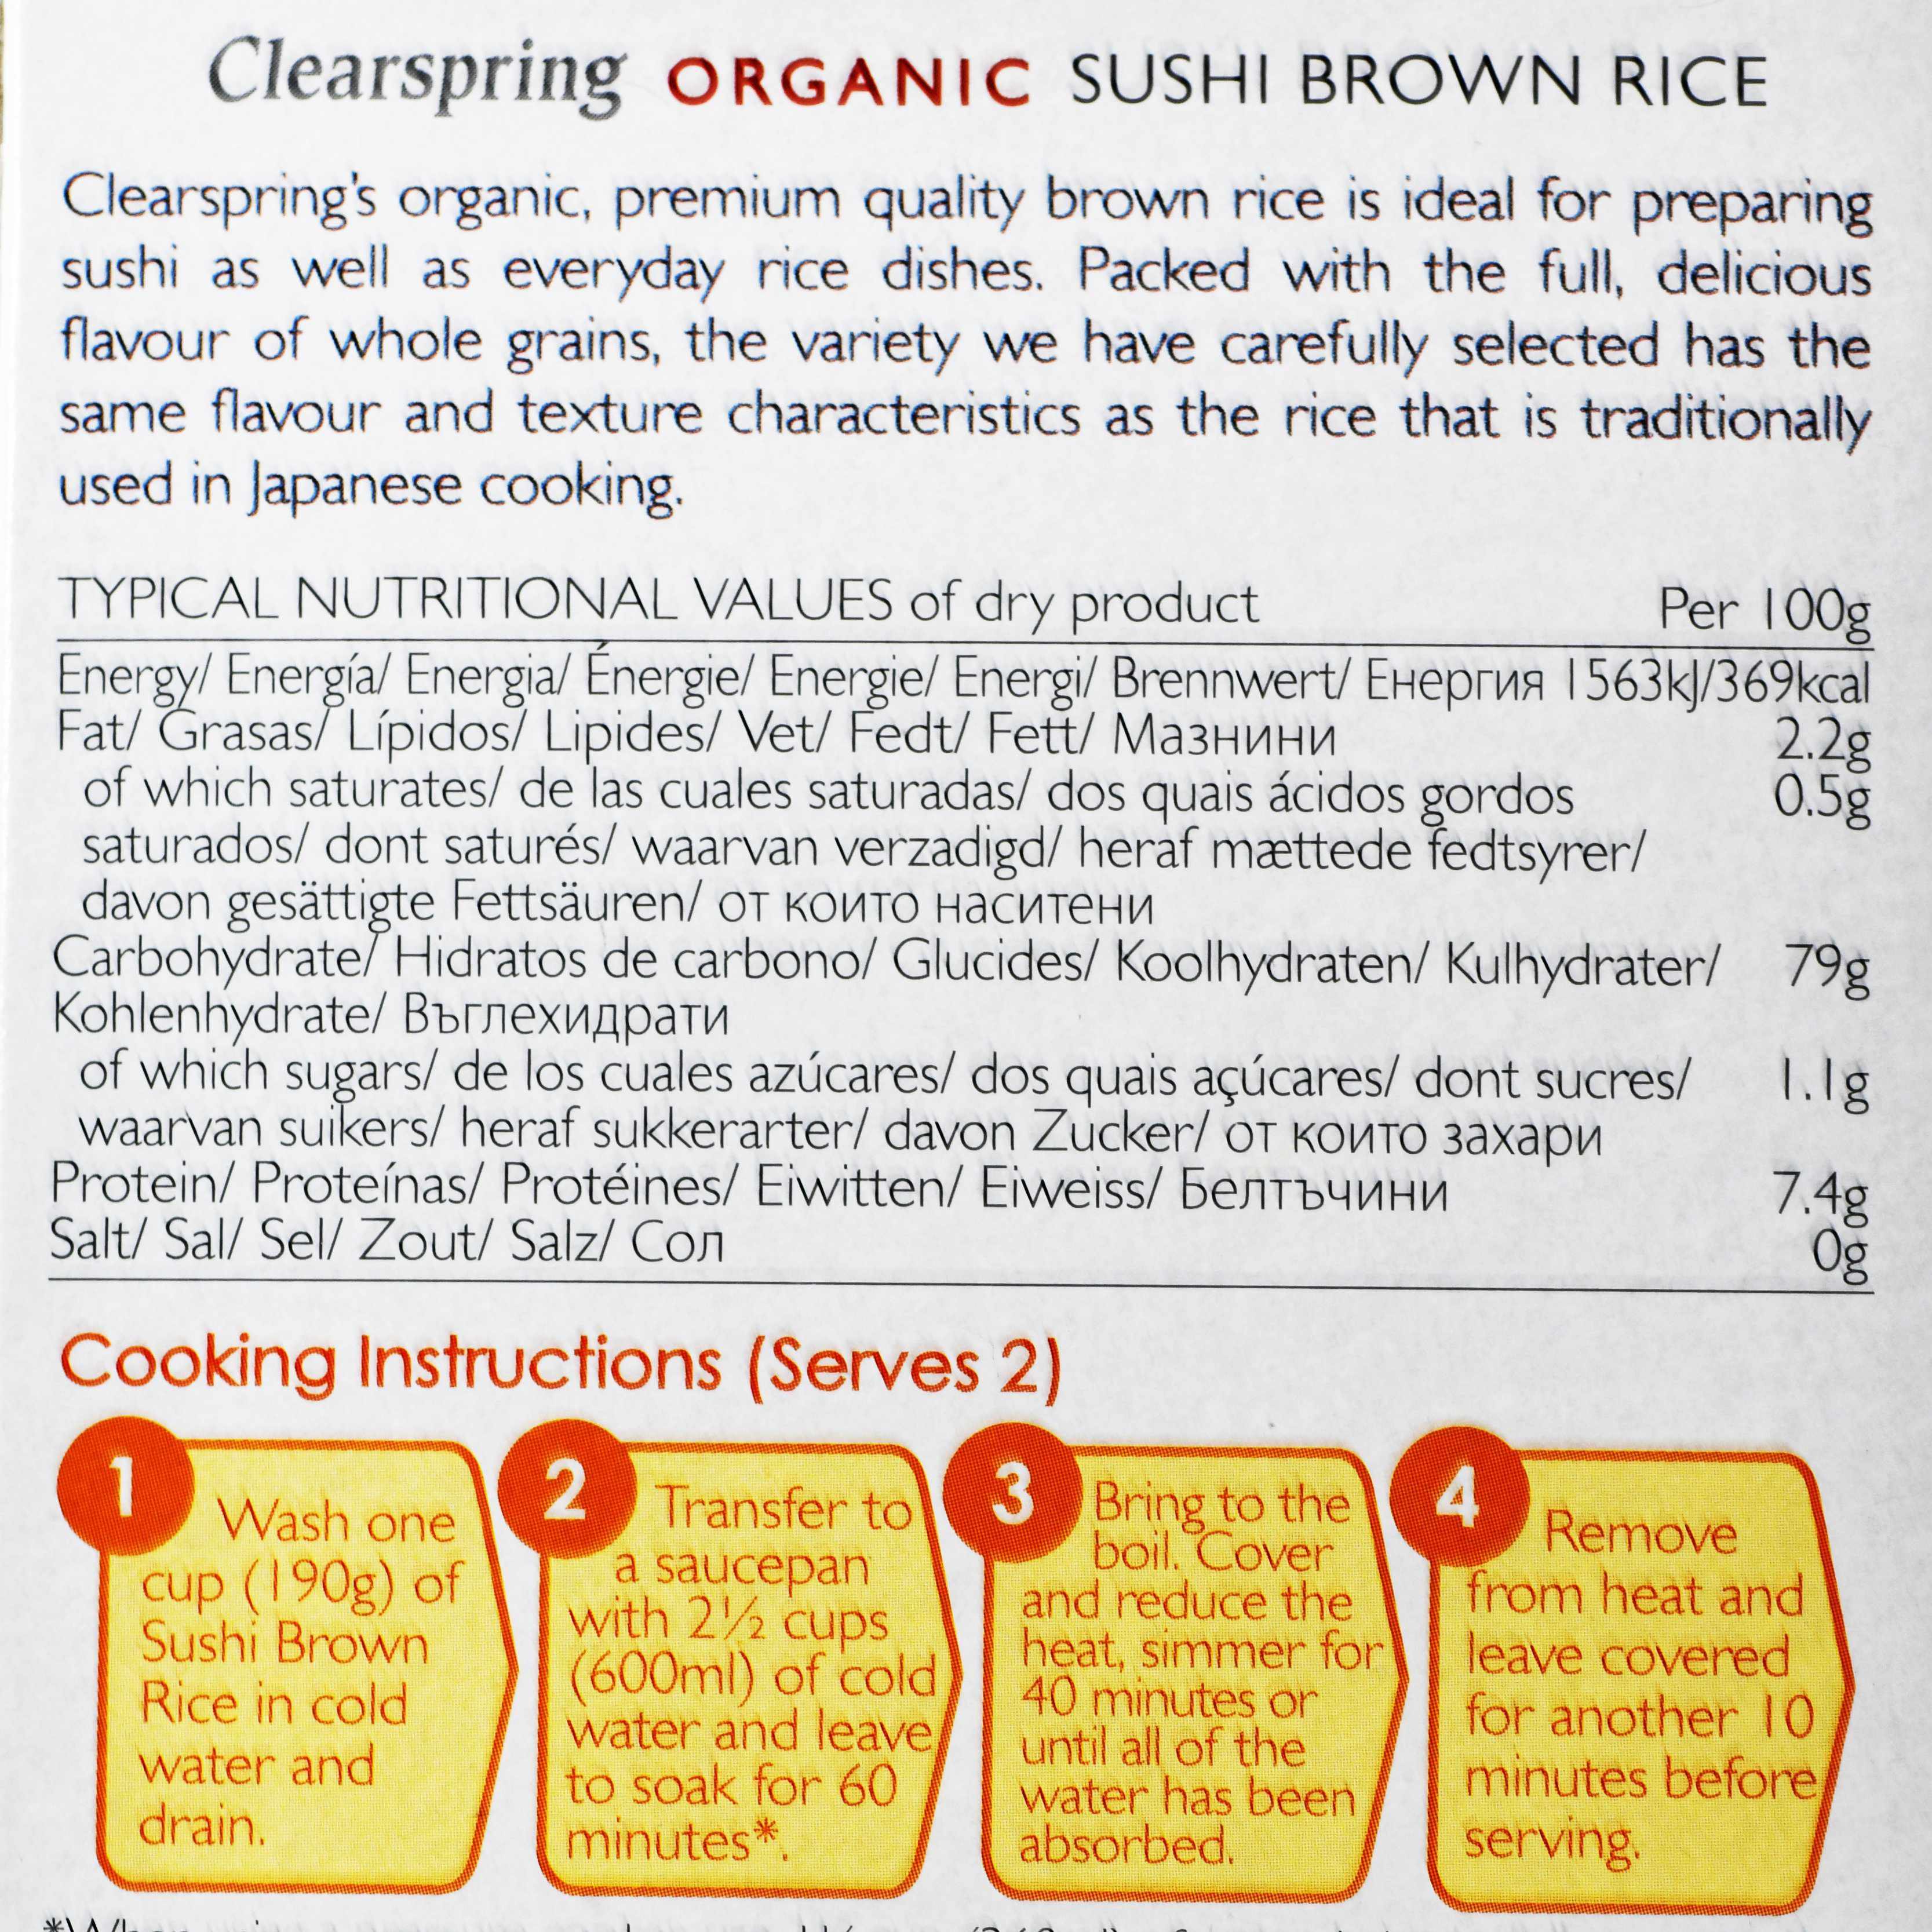 أرز السوشي الأسمر العضوي-الغذاء الحيوي